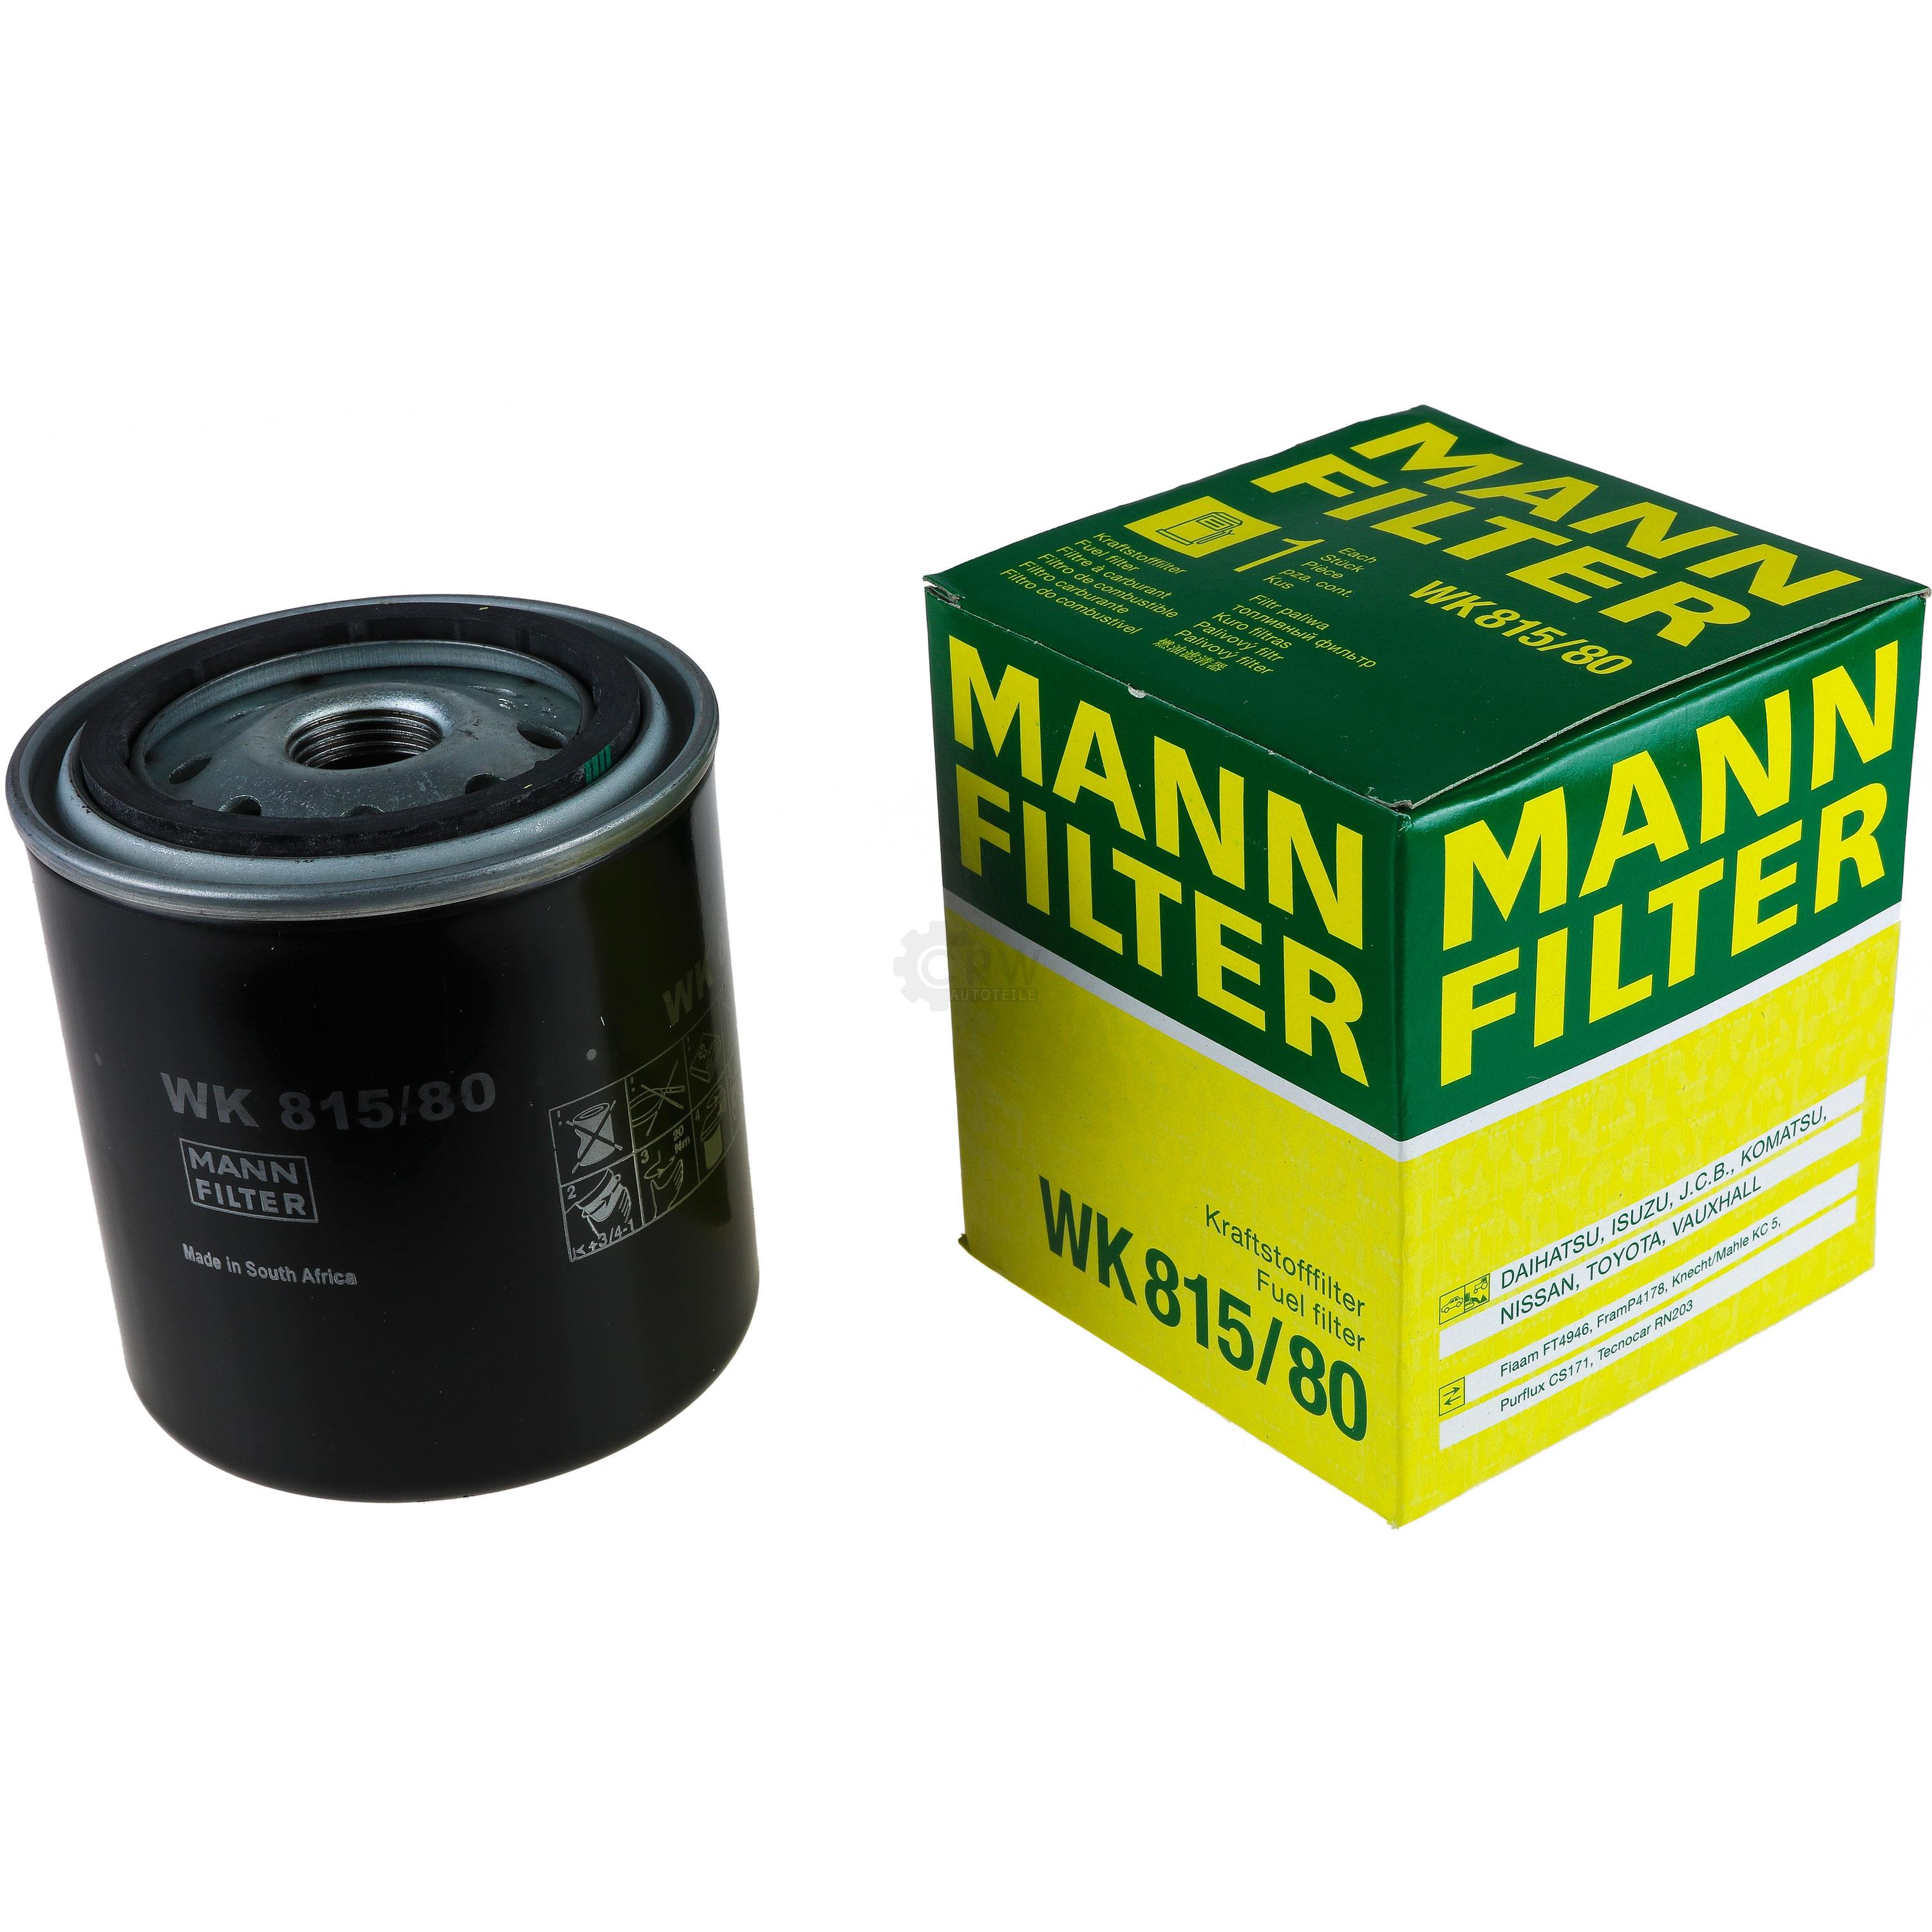 MANN-FILTER Kraftstofffilter WK 815/80 Fuel Filter